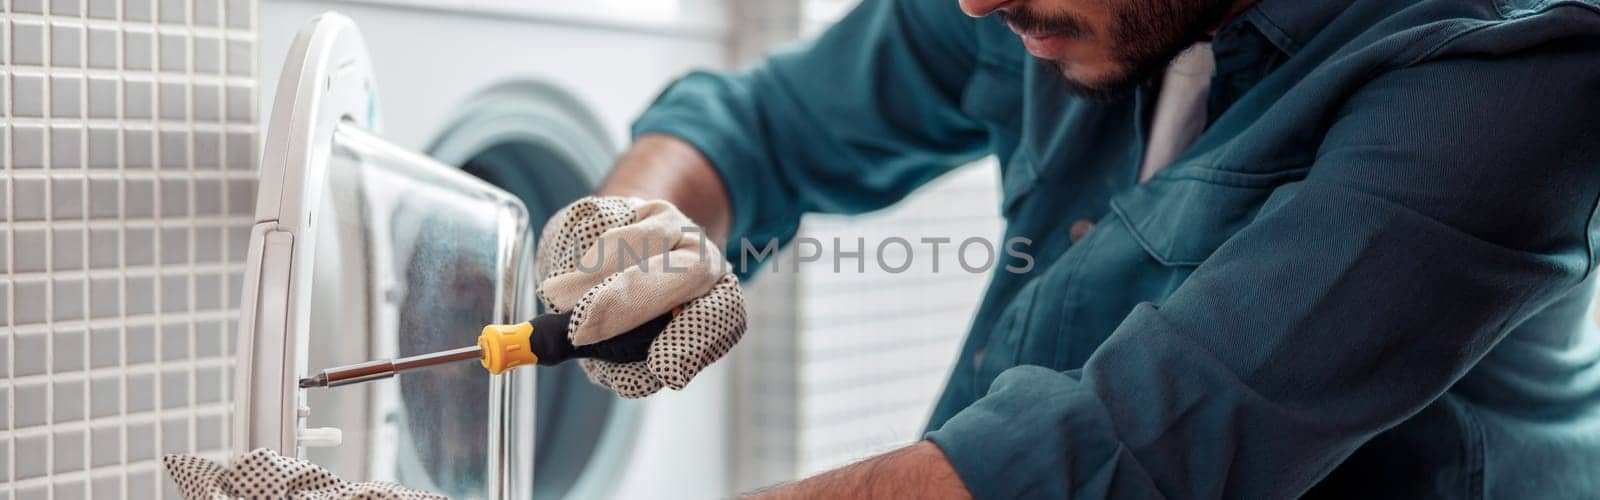 Focused repairman in worker suit is fixing washing machine in bathroom by Yaroslav_astakhov